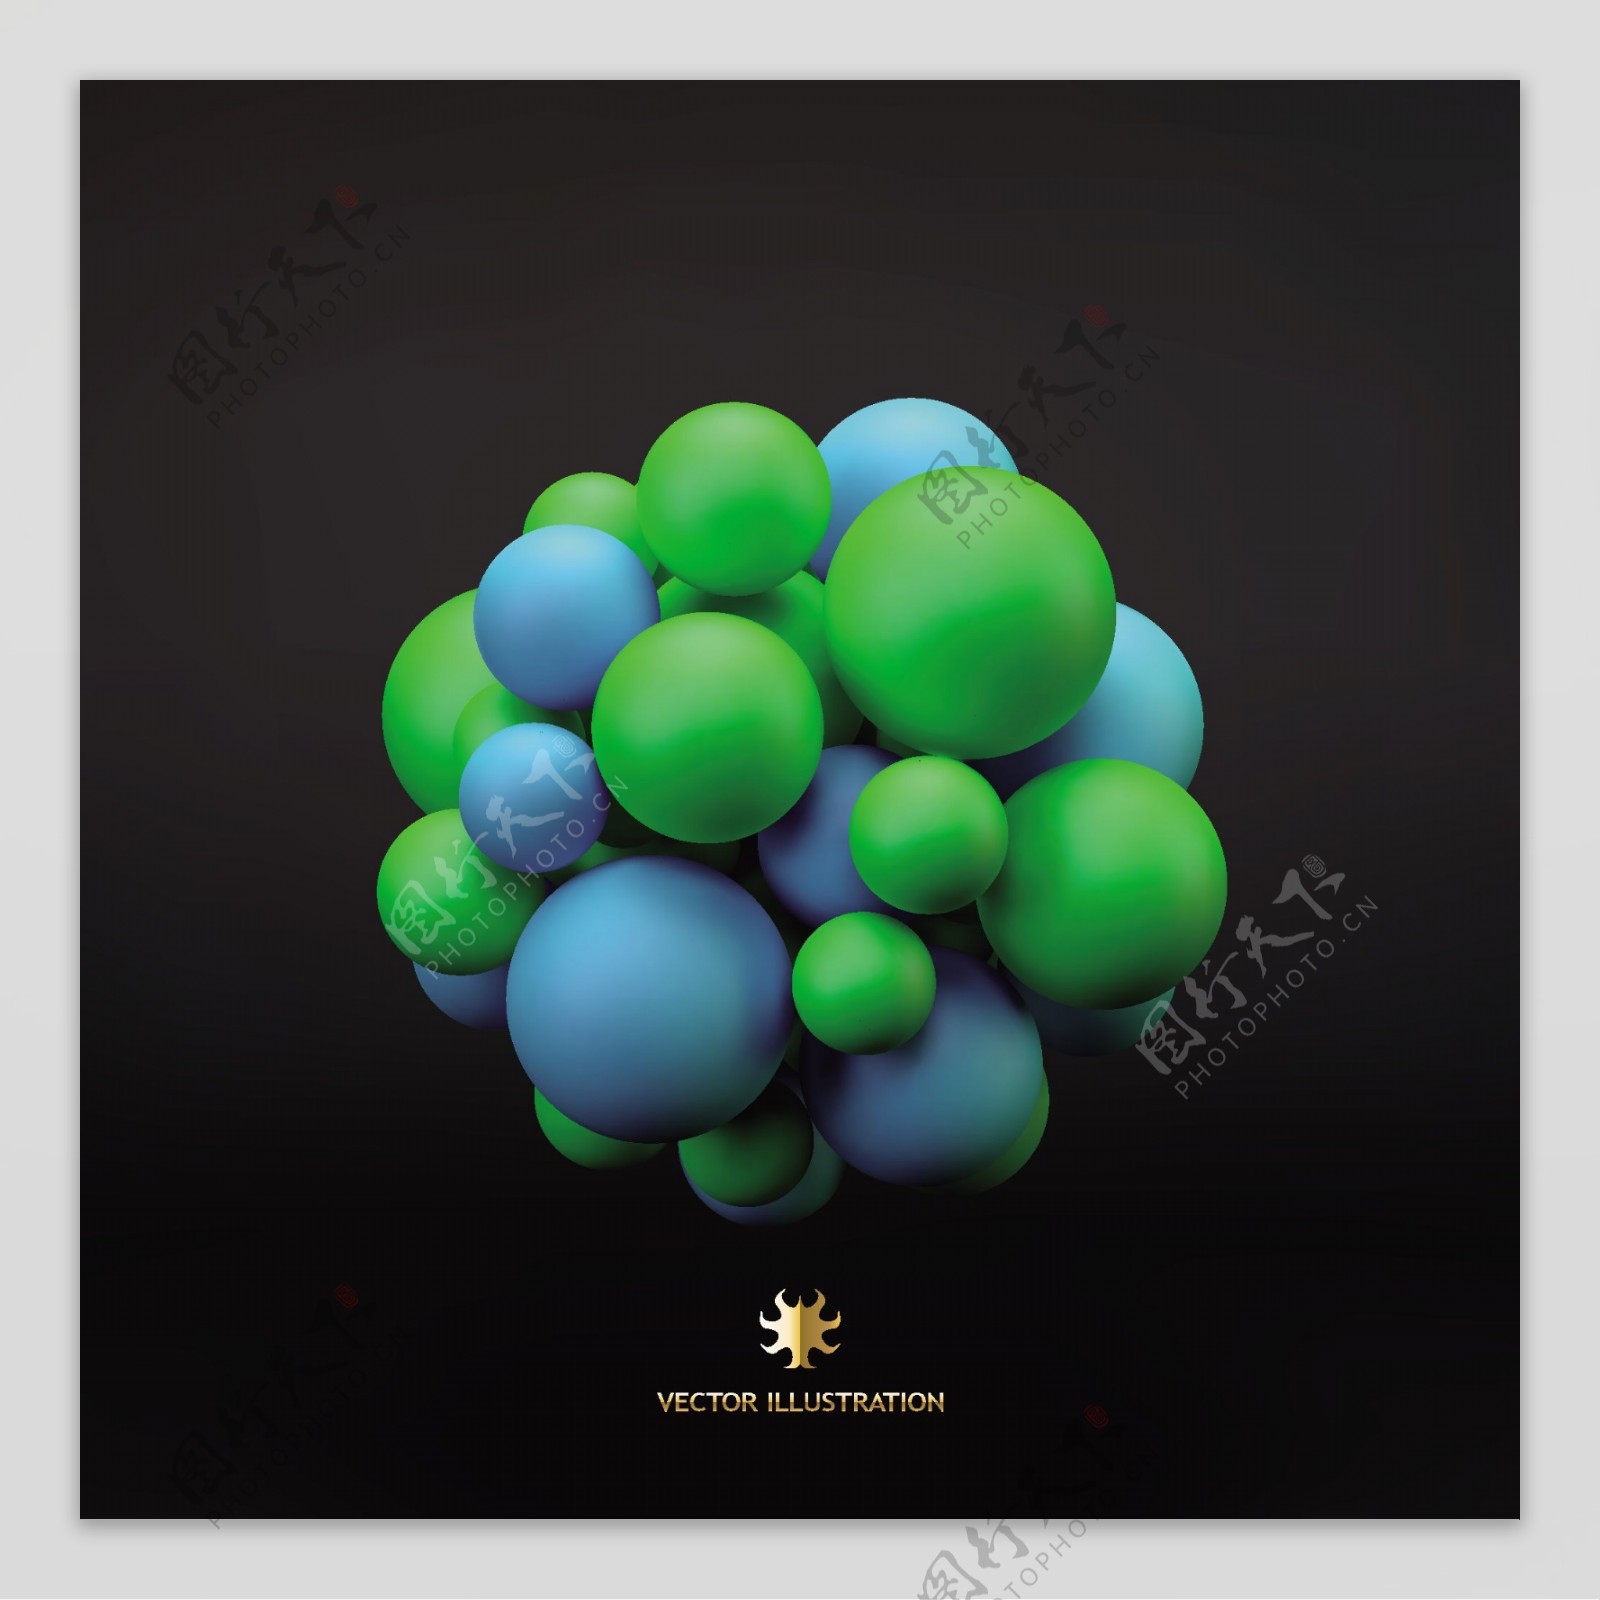 3D彩色球体装饰背景矢量素材